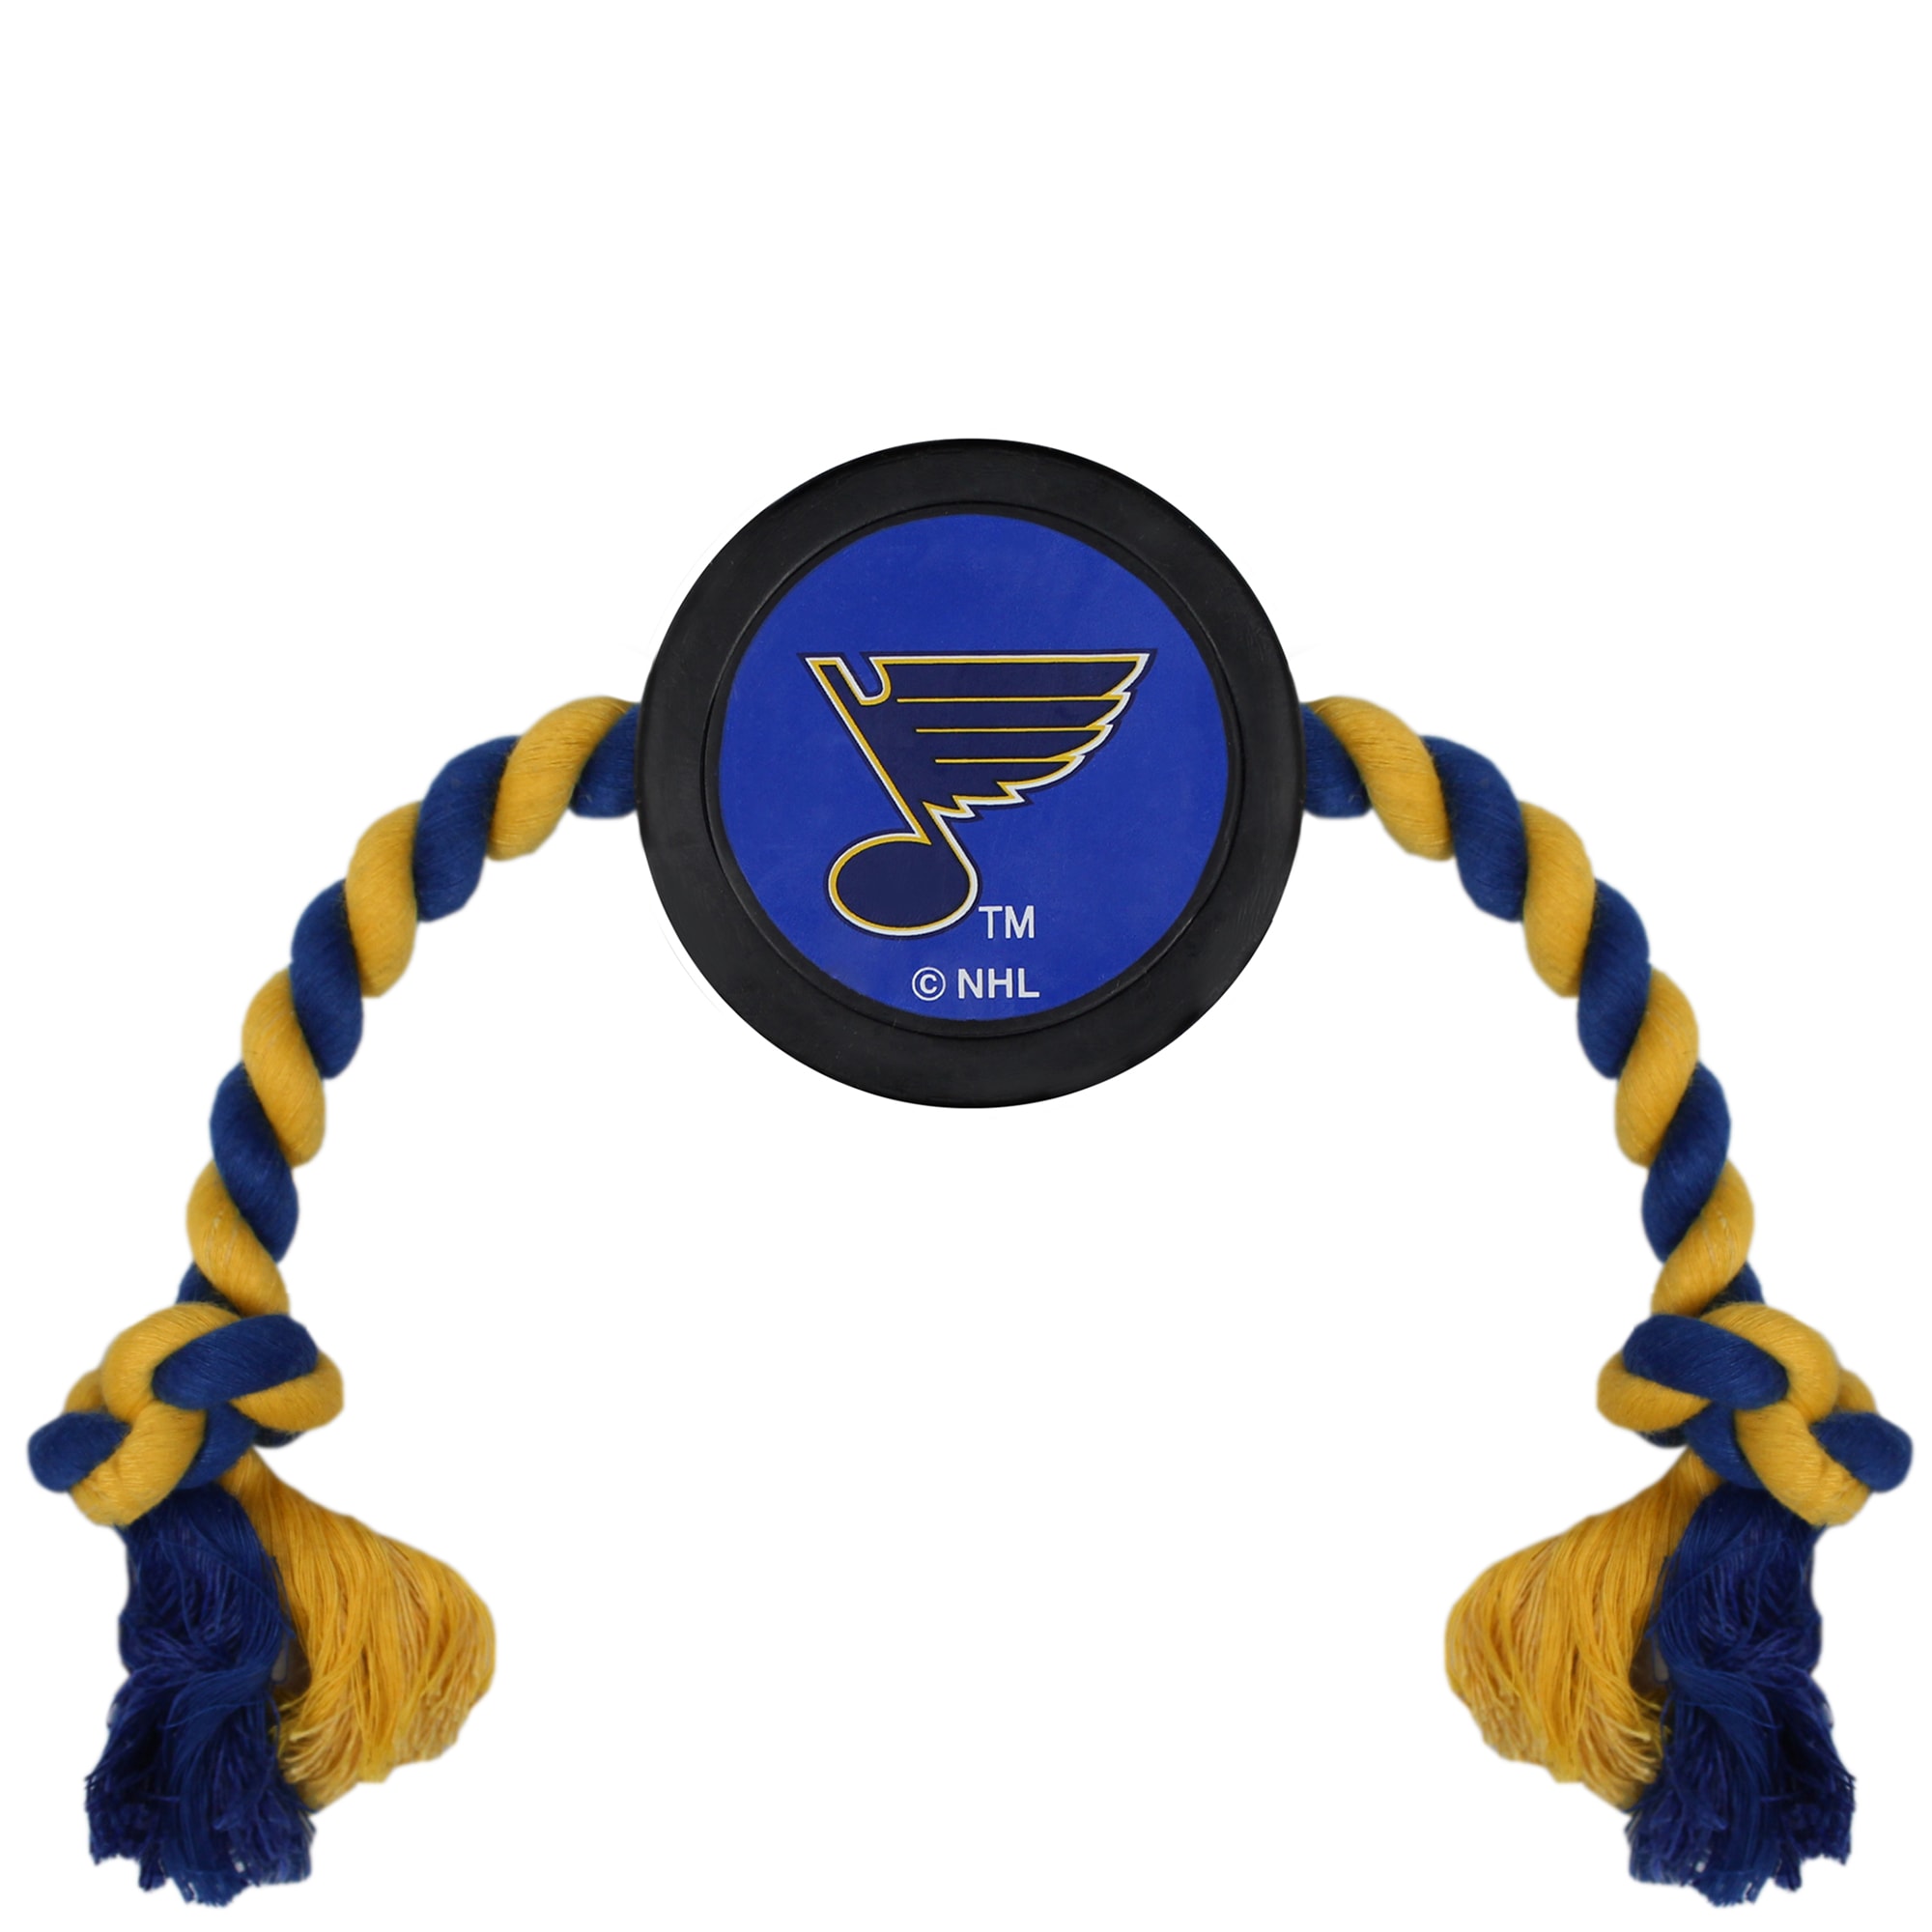 St. Louis Blues Gear Hockey Puck